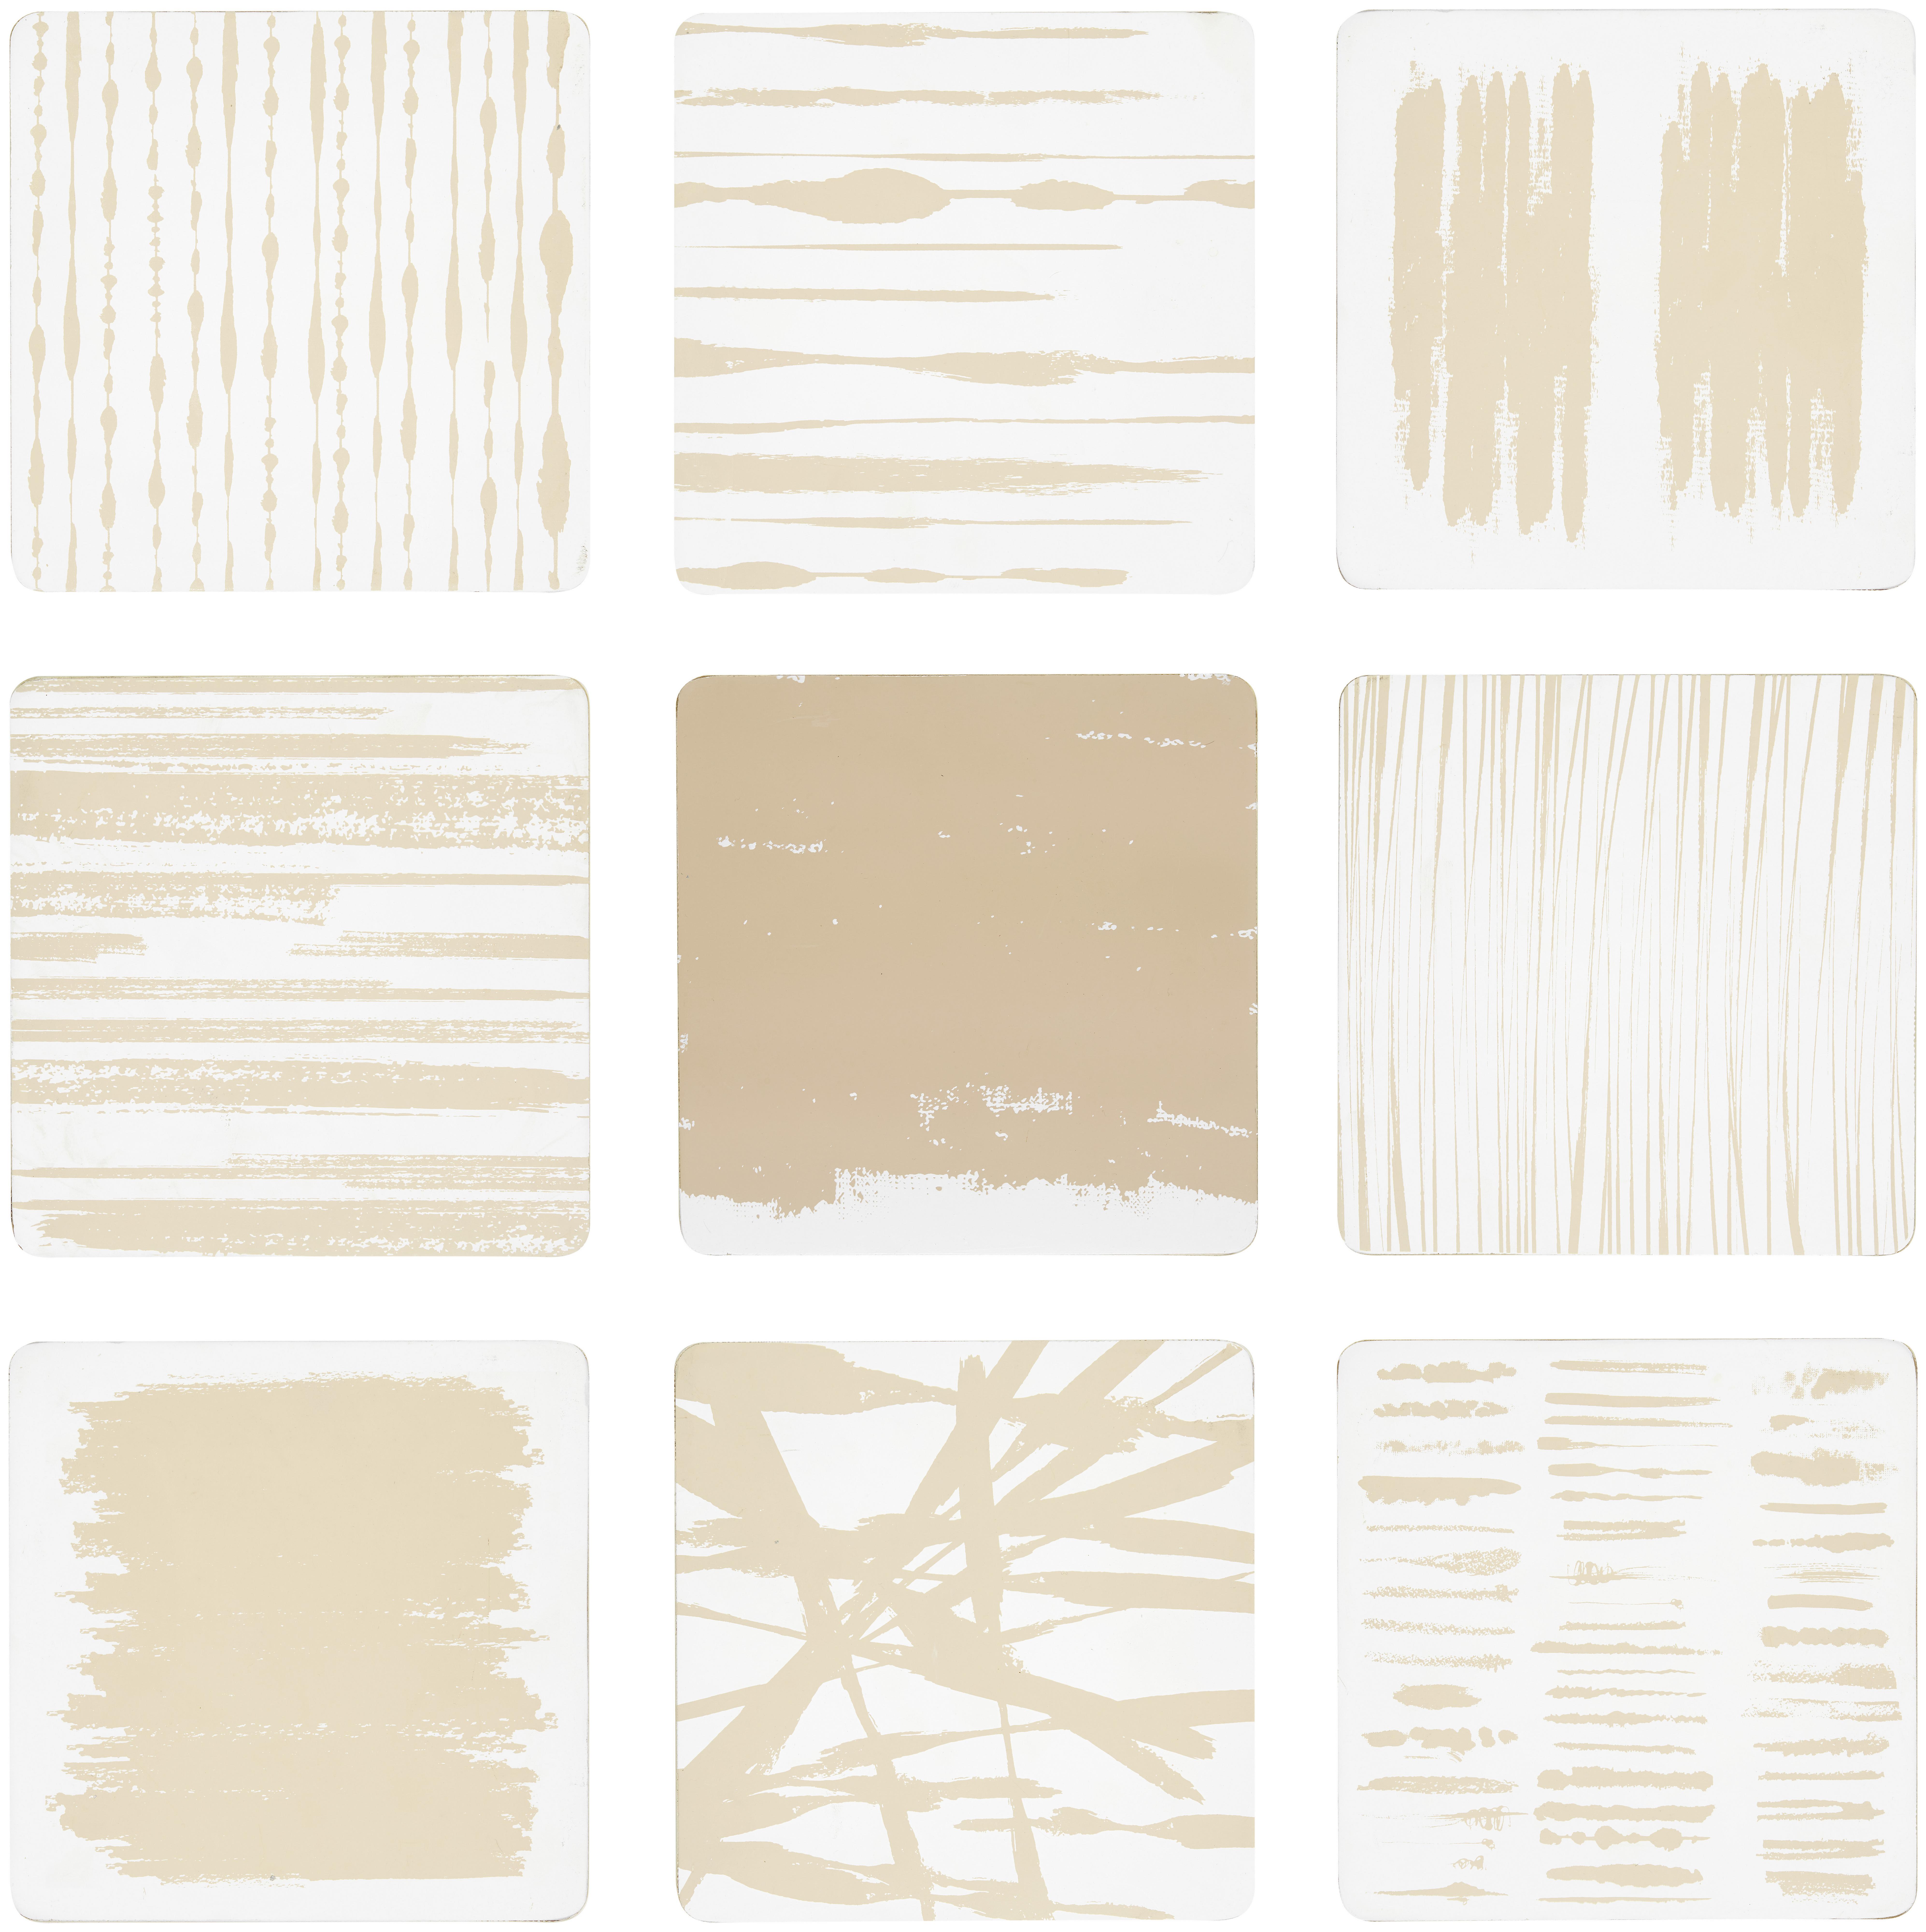 Fali Dekoráció Dunes - Bézs/Fehér, modern, Faalapú anyag (20/20/2cm) - Modern Living